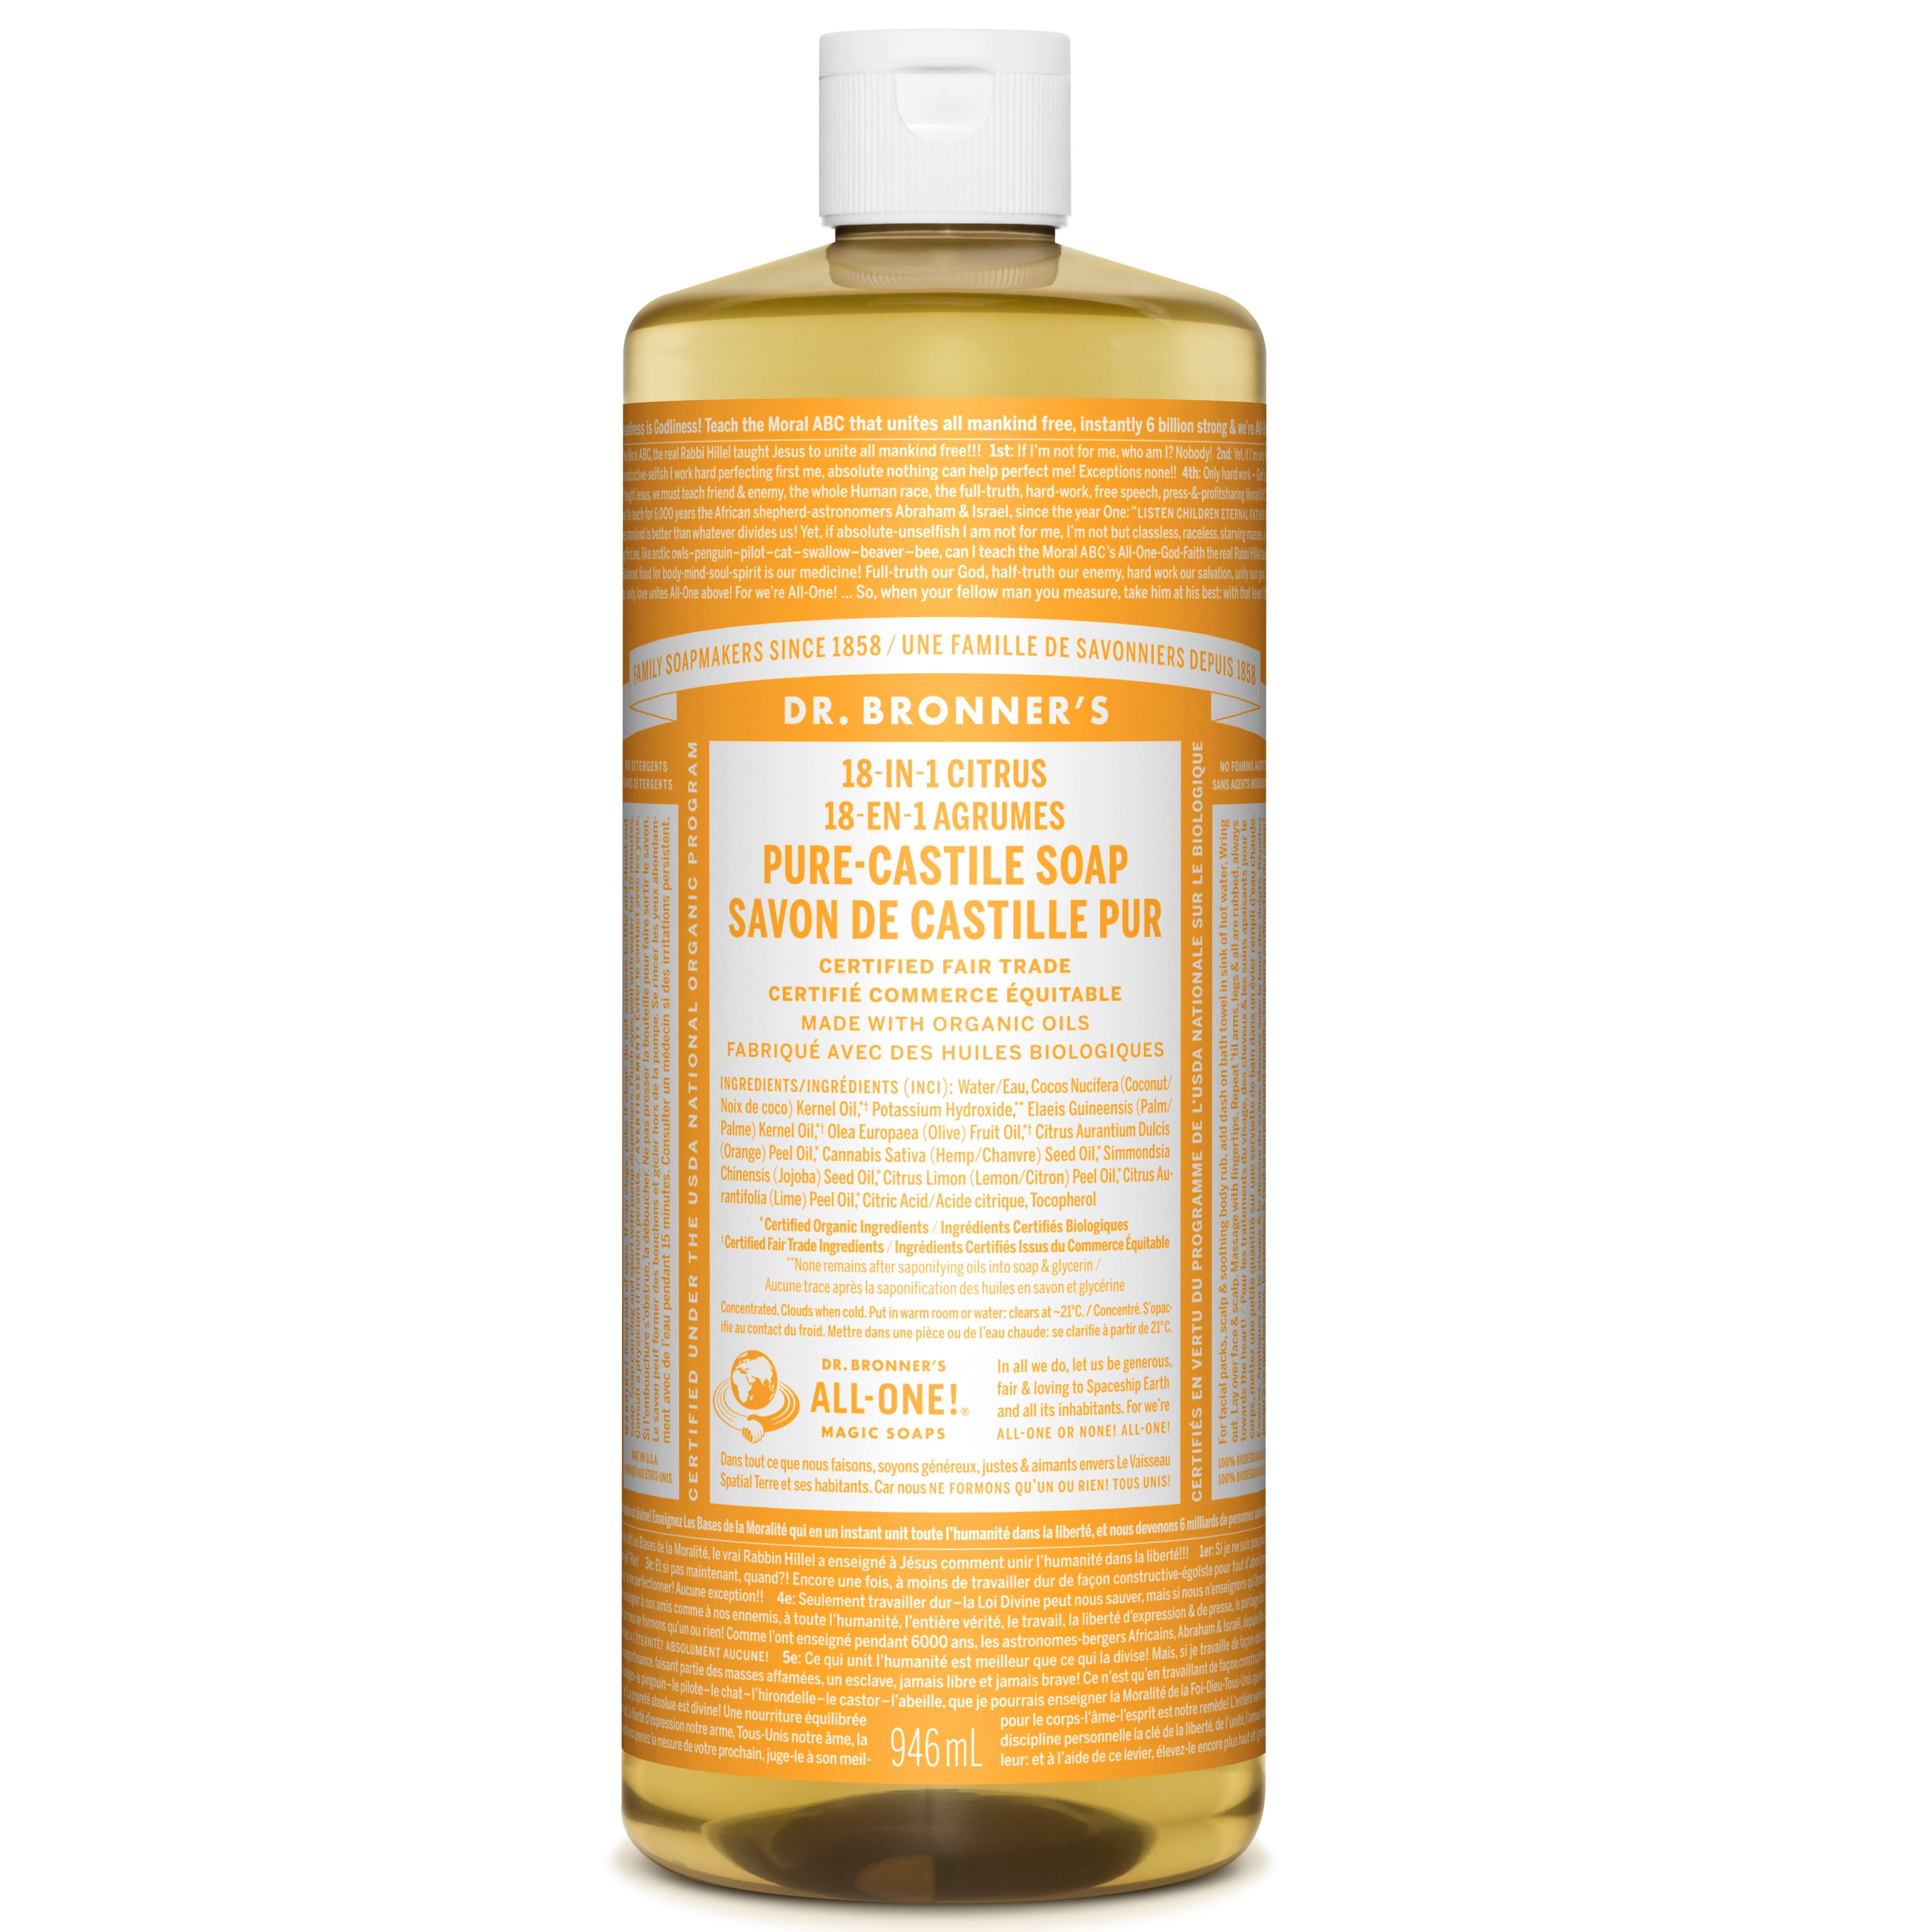 Dr. Bronner's Fair Trade & Organic Castile Liquid Soap - Citrus